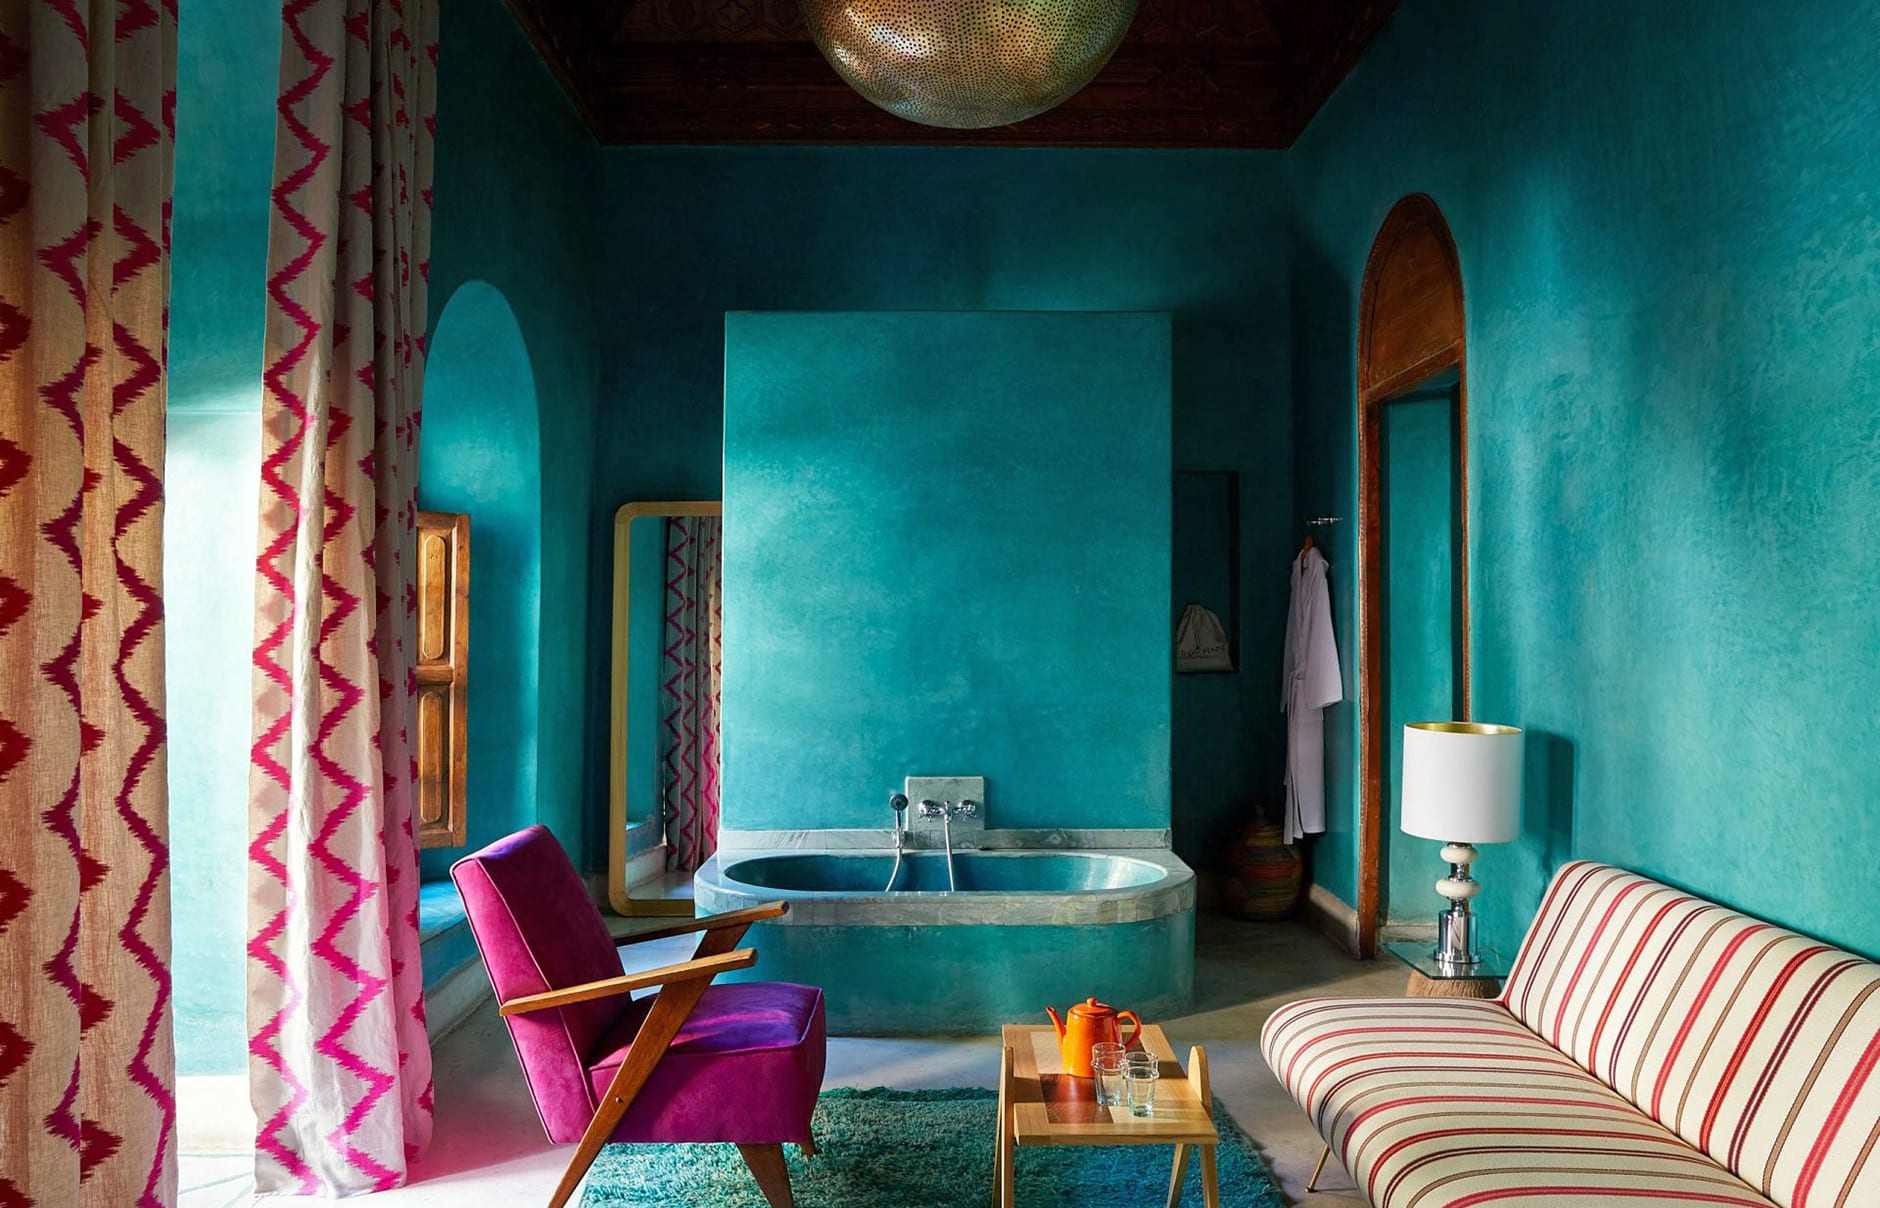 Riad El Fenn, Marrakech, Morocco. Hotel Review by TravelPlusStyle. Photo © El Fenn